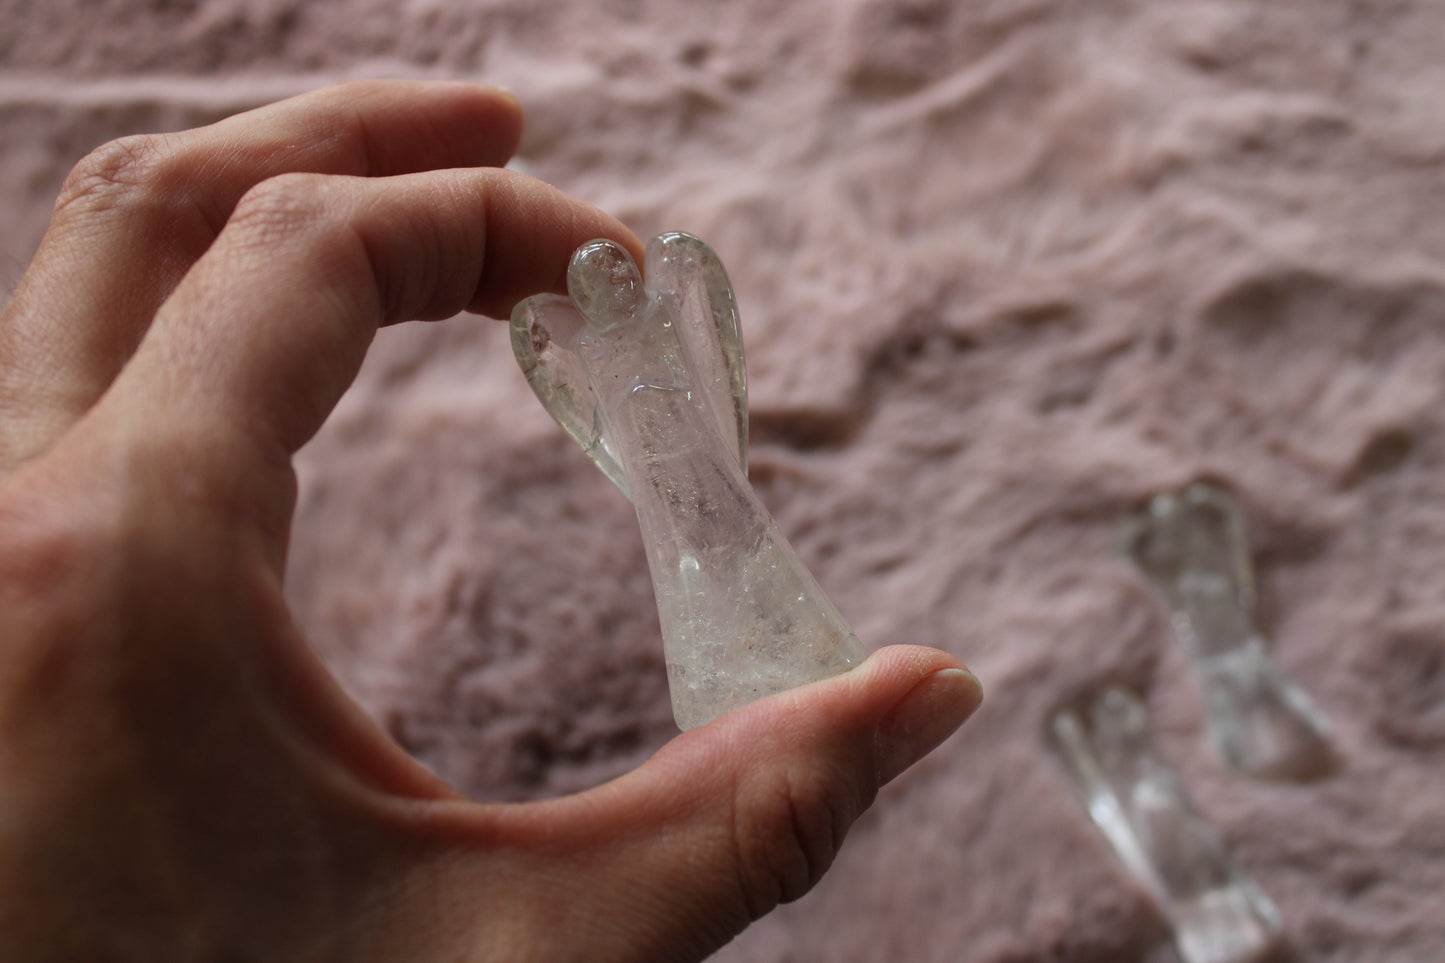 Un ange en cristal de roche 5 - 6 cm